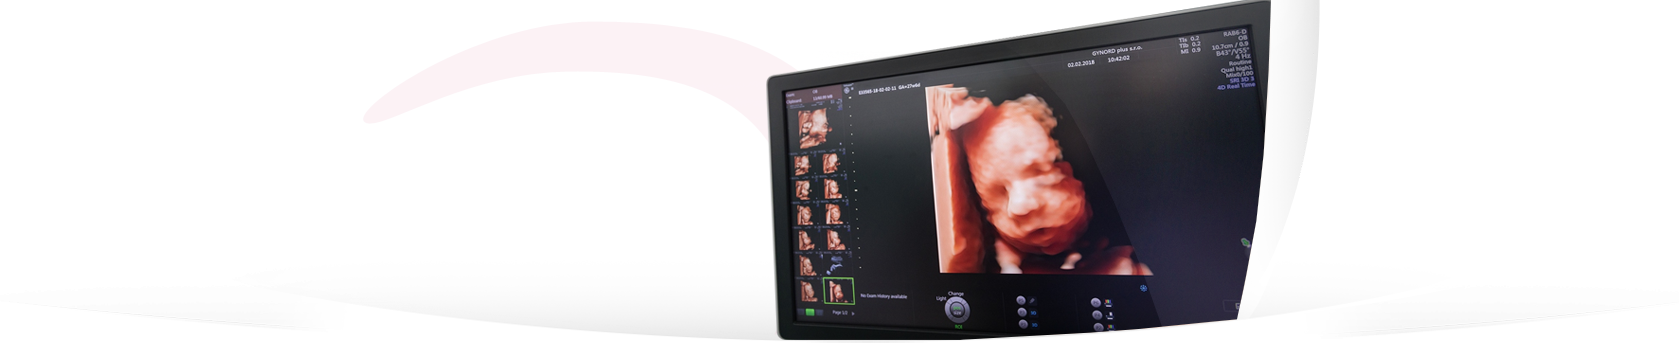 Nejkrásnější 3D/4D ultrazvuk